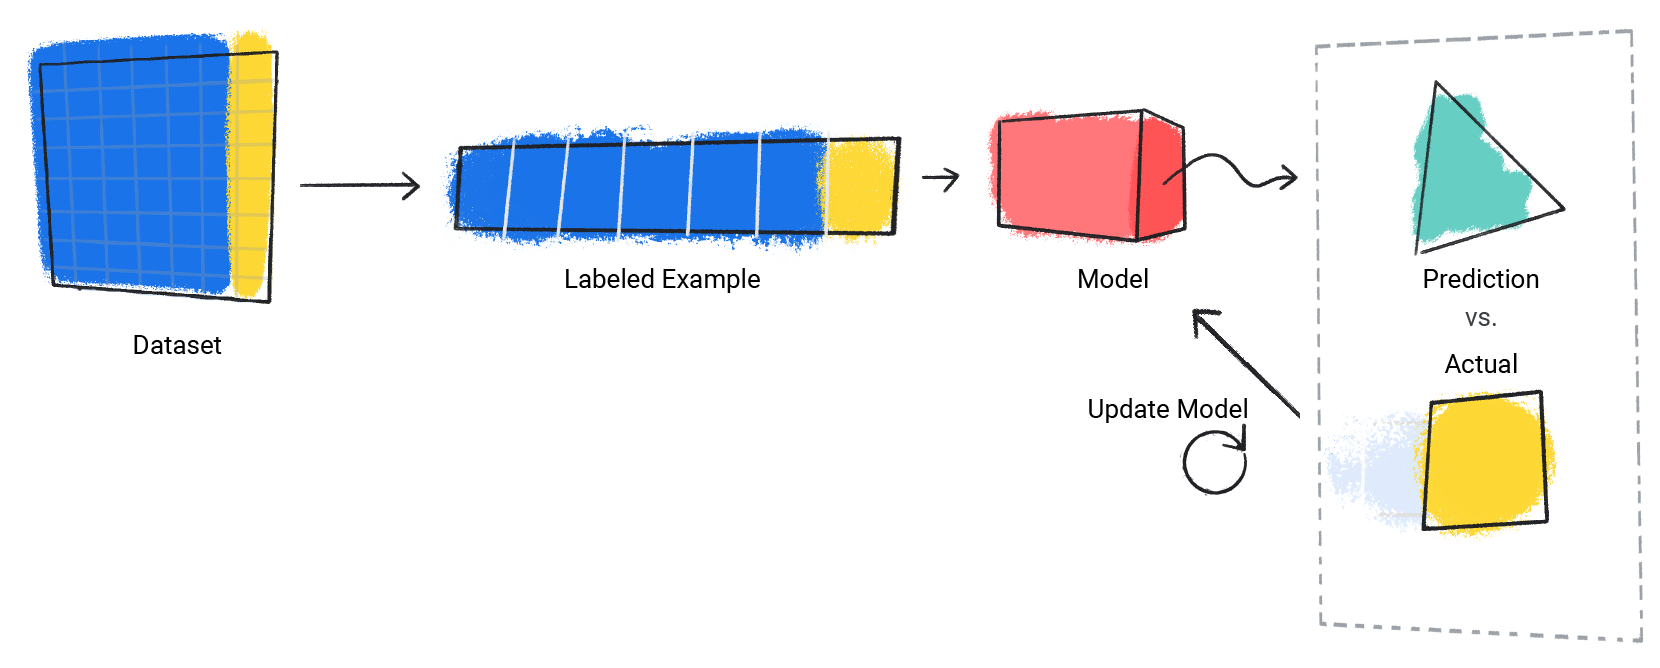 ऐसी इमेज जिसमें किसी मॉडल की असल वैल्यू के बजाय अनुमान की प्रोसेस को दोहराया जा रहा है.